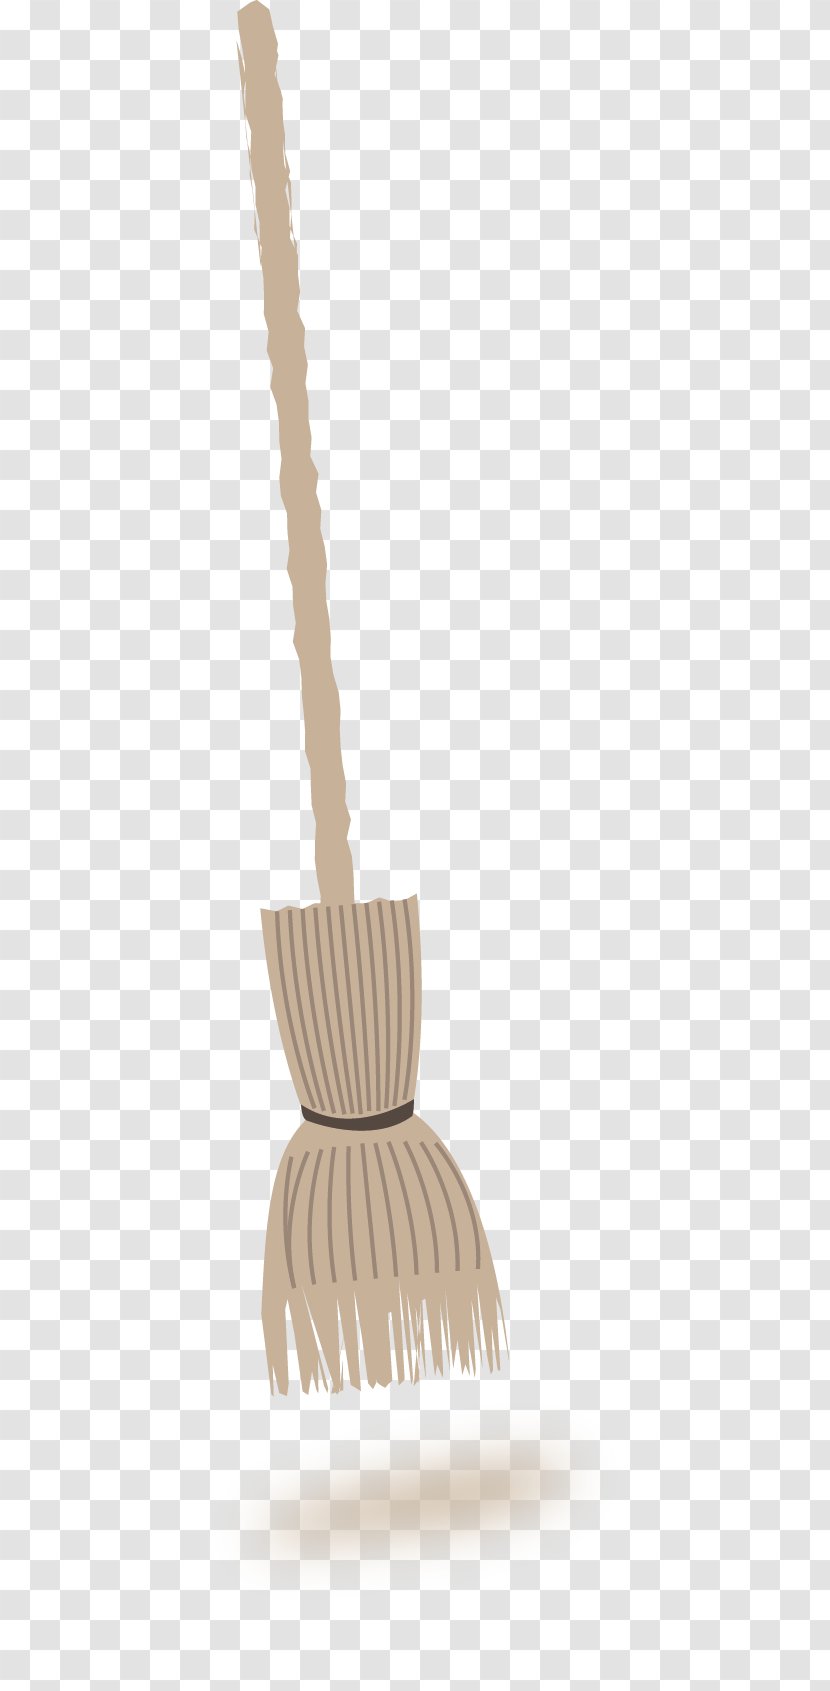 Public Domain Clip Art - Wood - Broom Transparent PNG